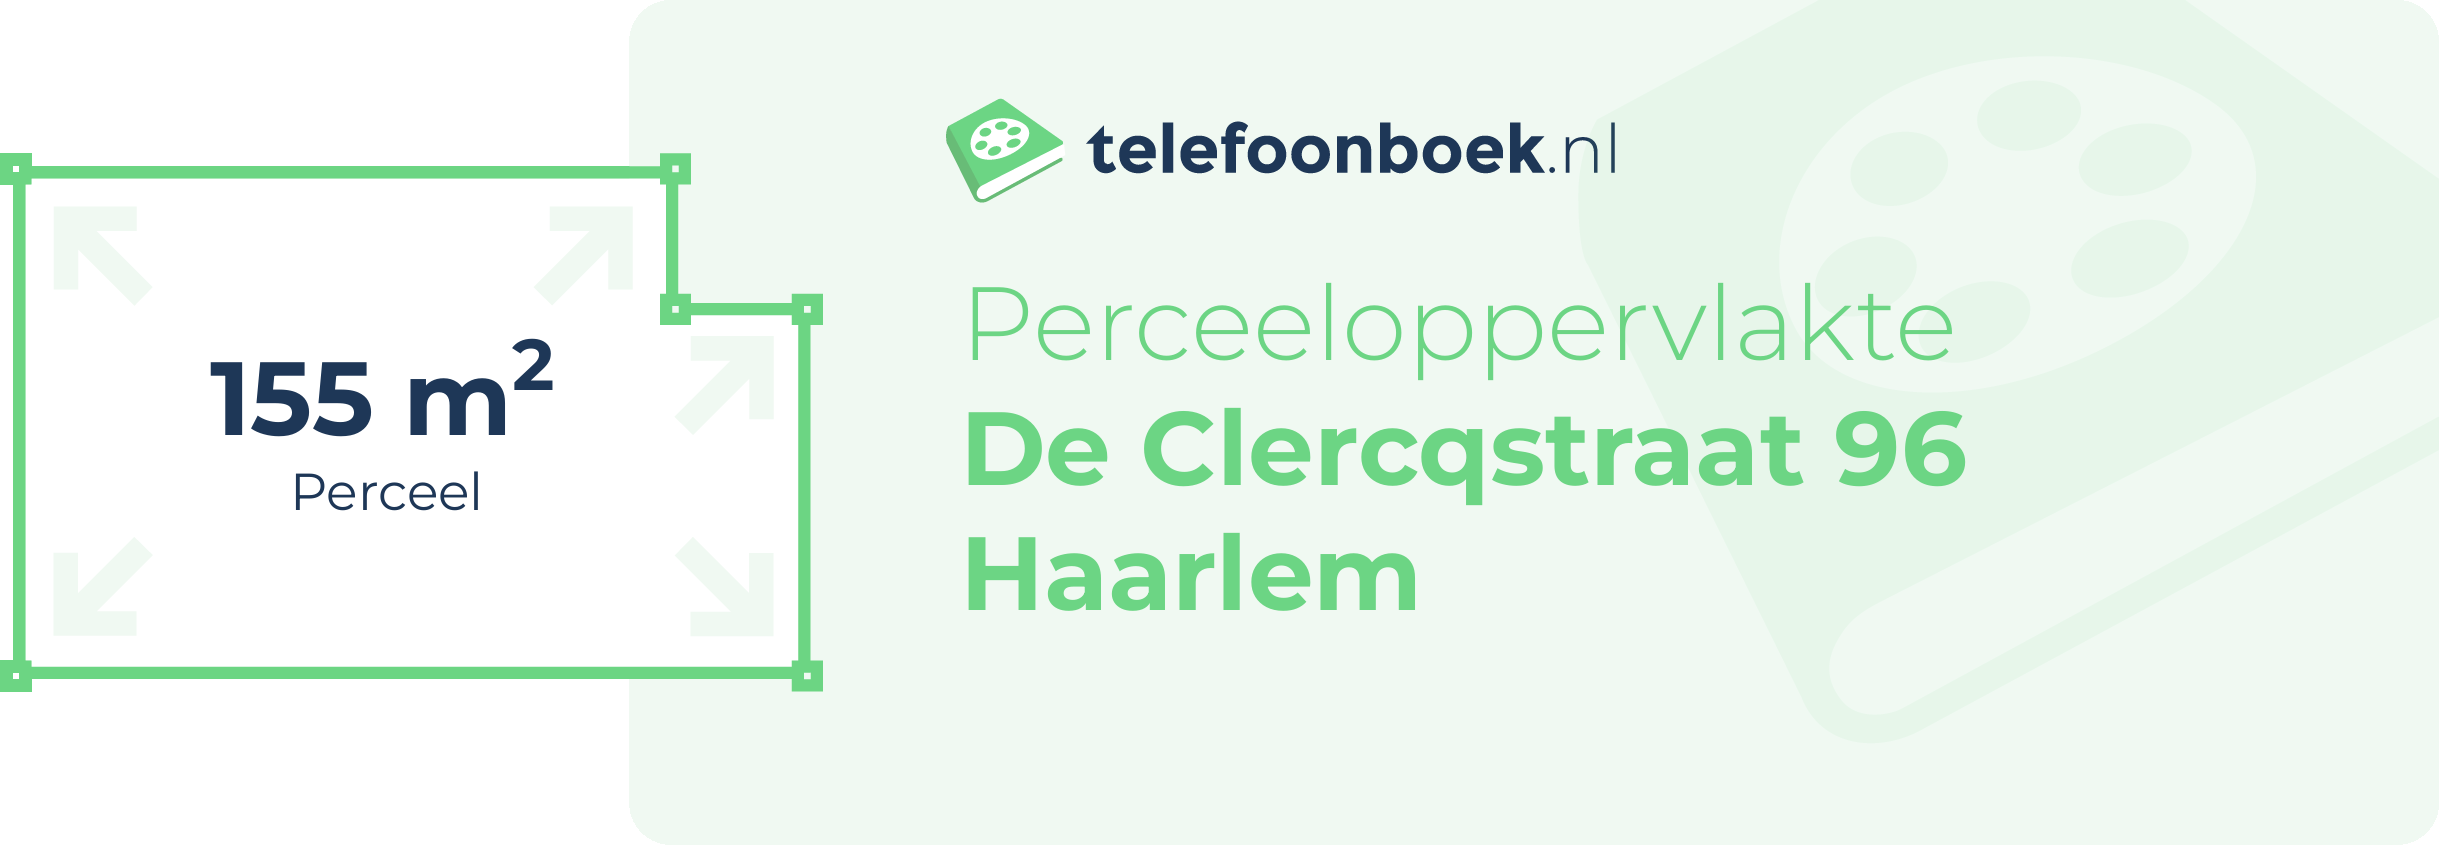 Perceeloppervlakte De Clercqstraat 96 Haarlem